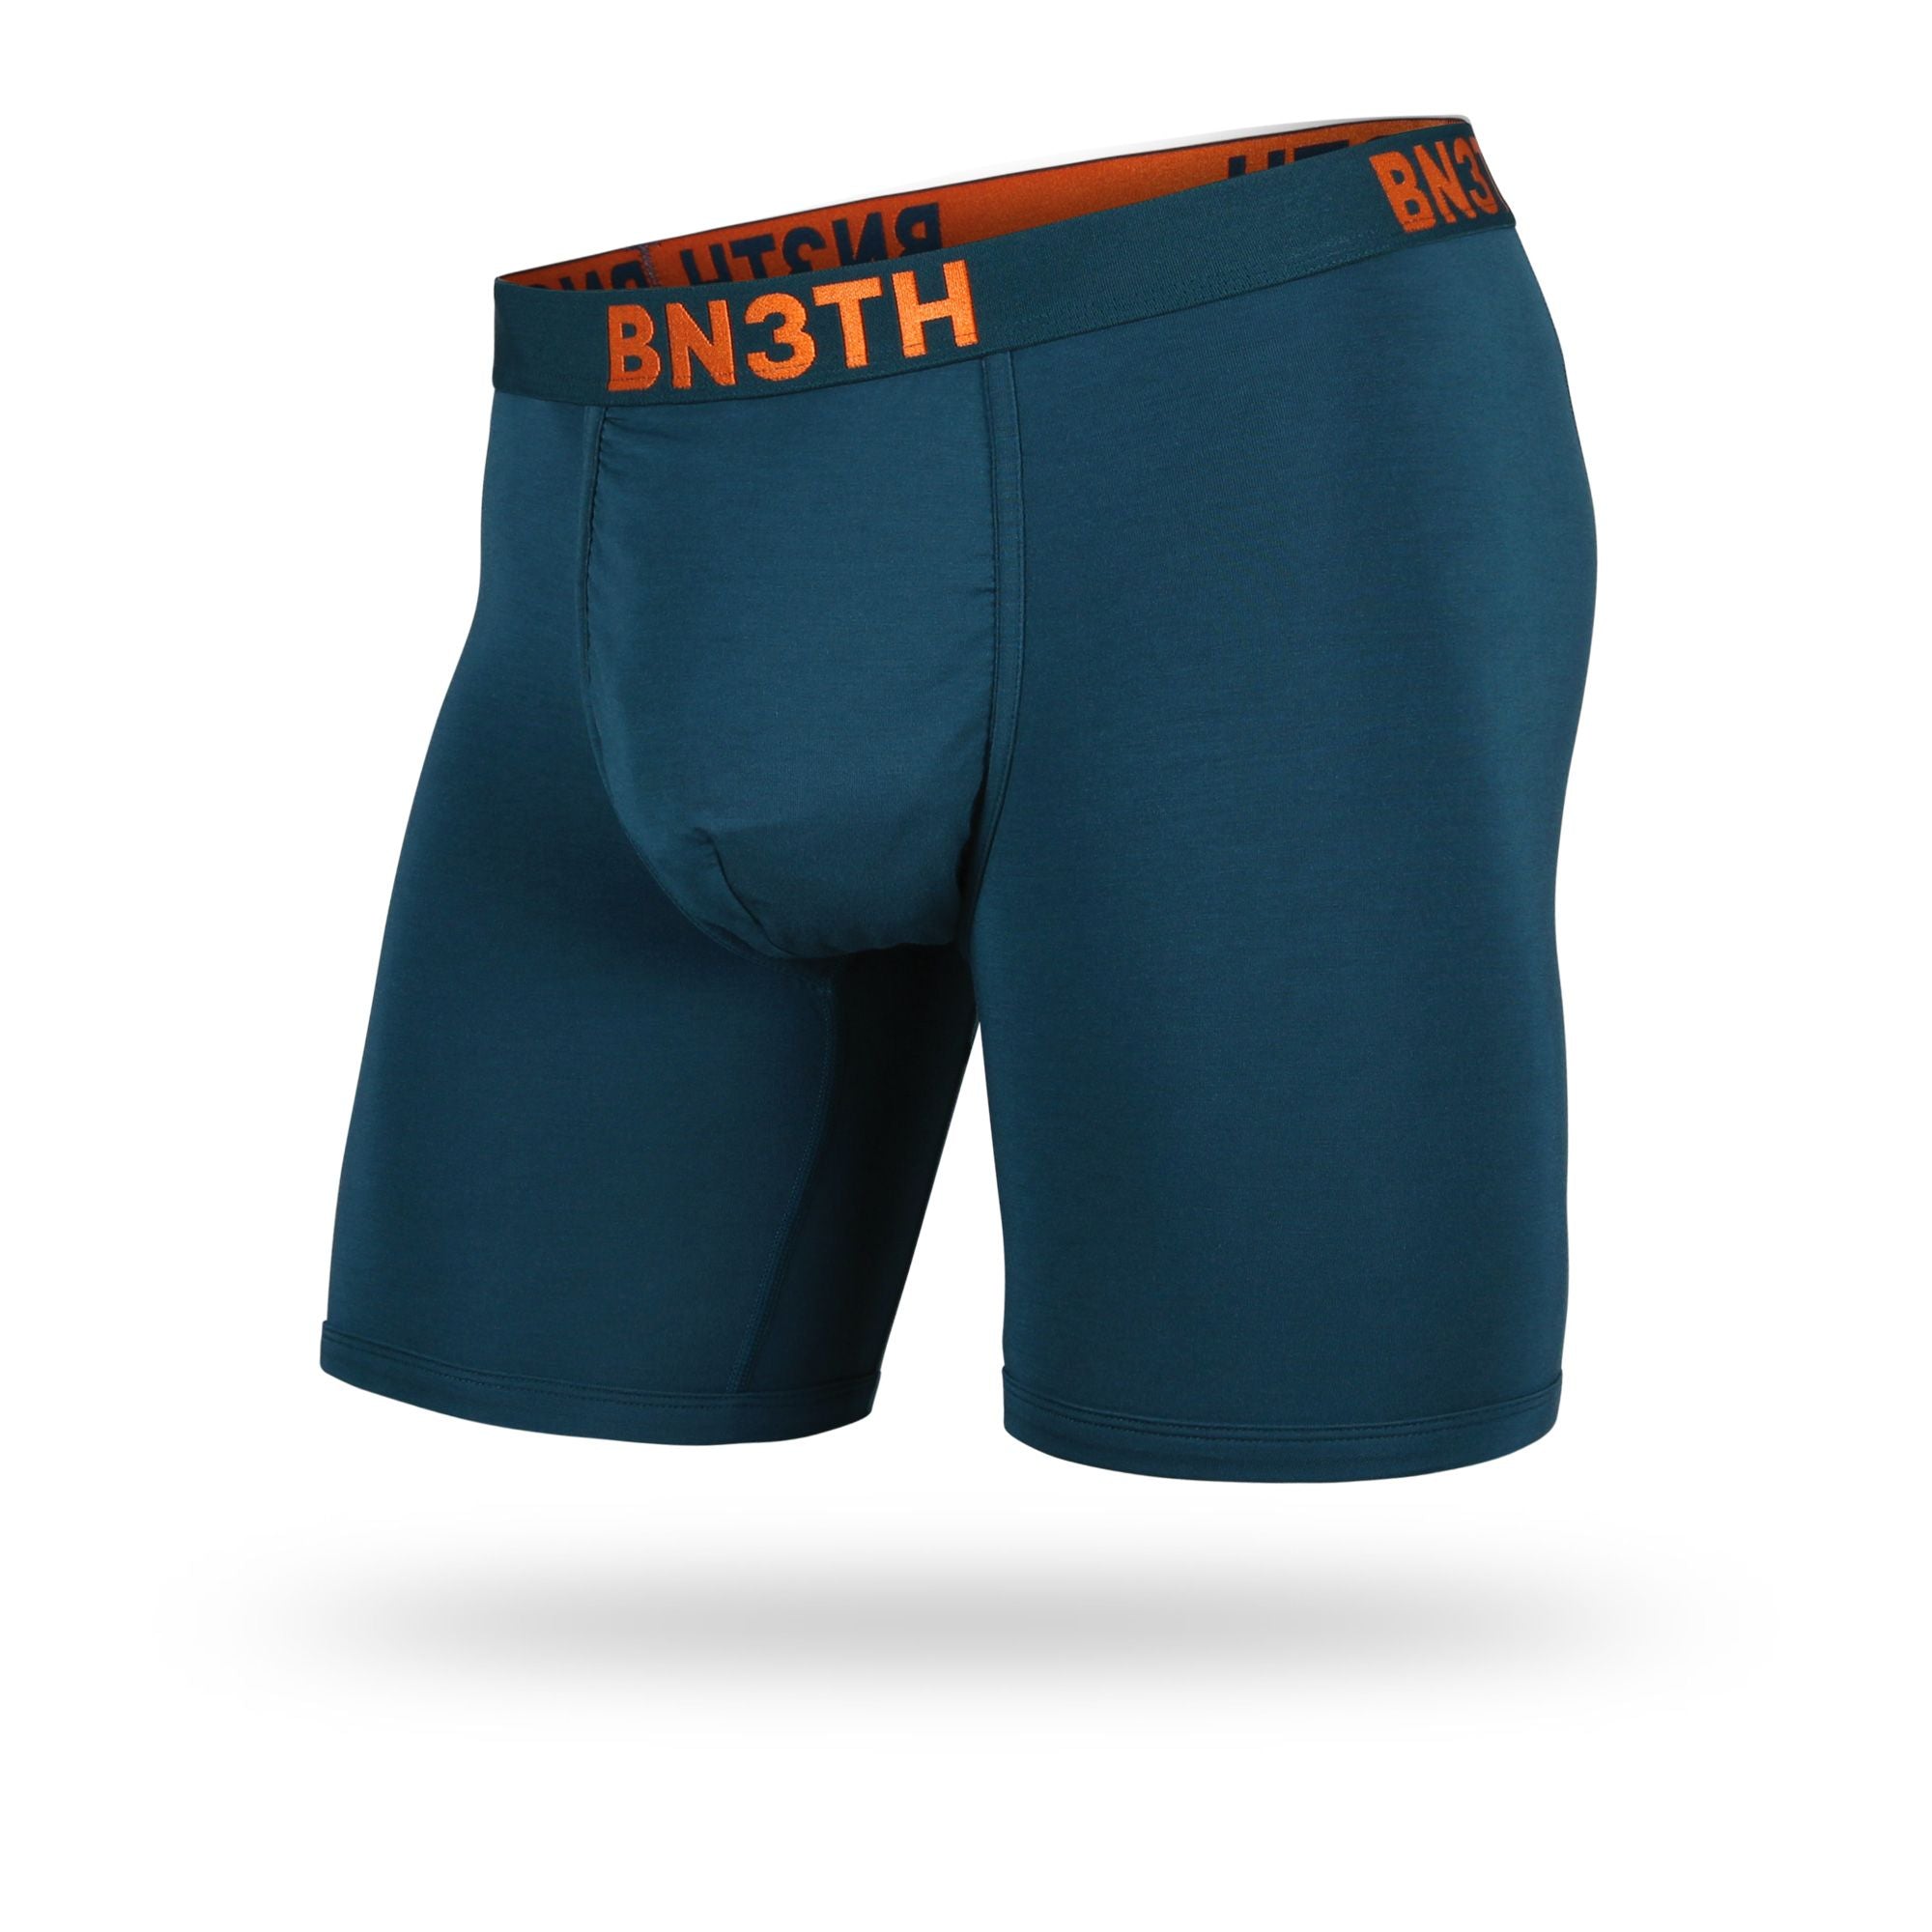 BN3TH : 2 boxers Bn3th & 2 paires de bas Hook